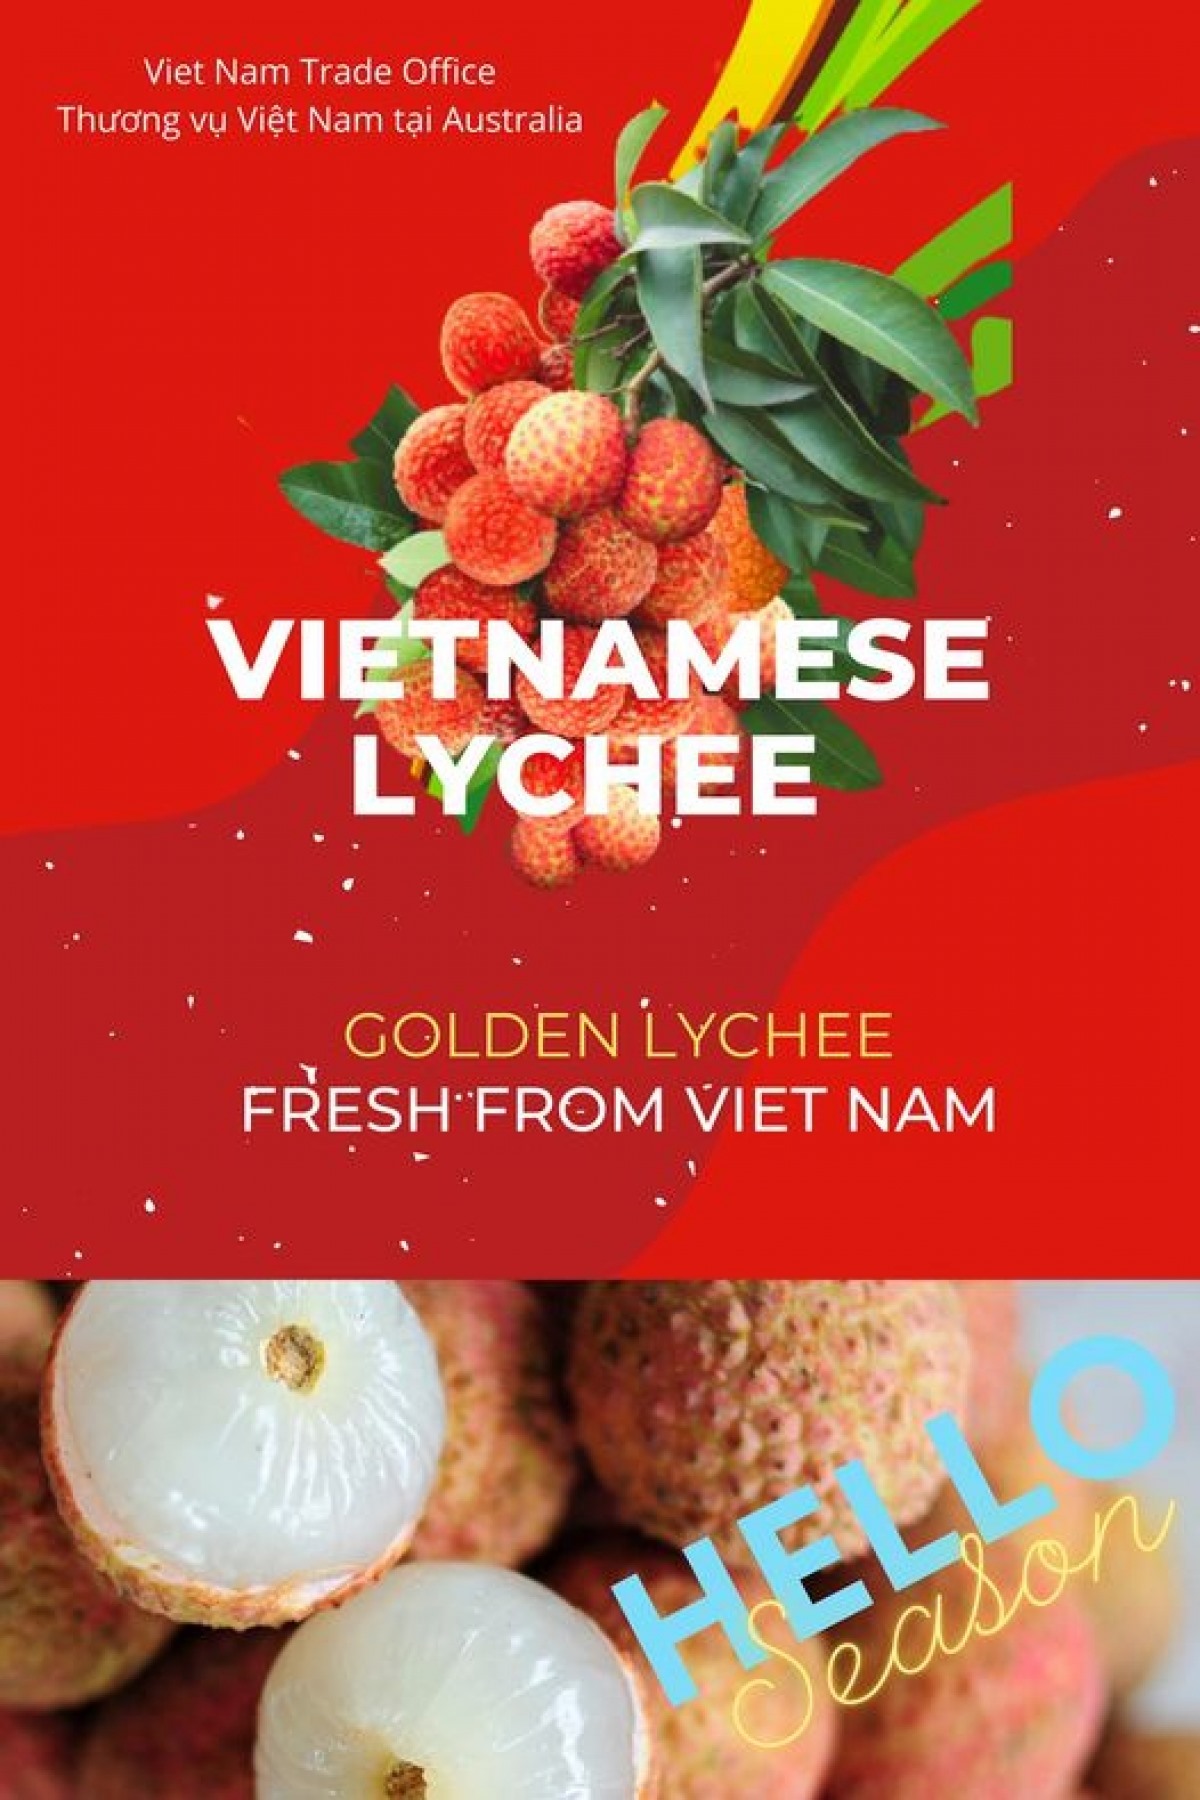 Chương trình xây dựng thương hiệu và thúc đẩy tiêu thụ quả vải Việt Nam tại Australia do Thương vụ Việt Nam tại Australia thực hiện.